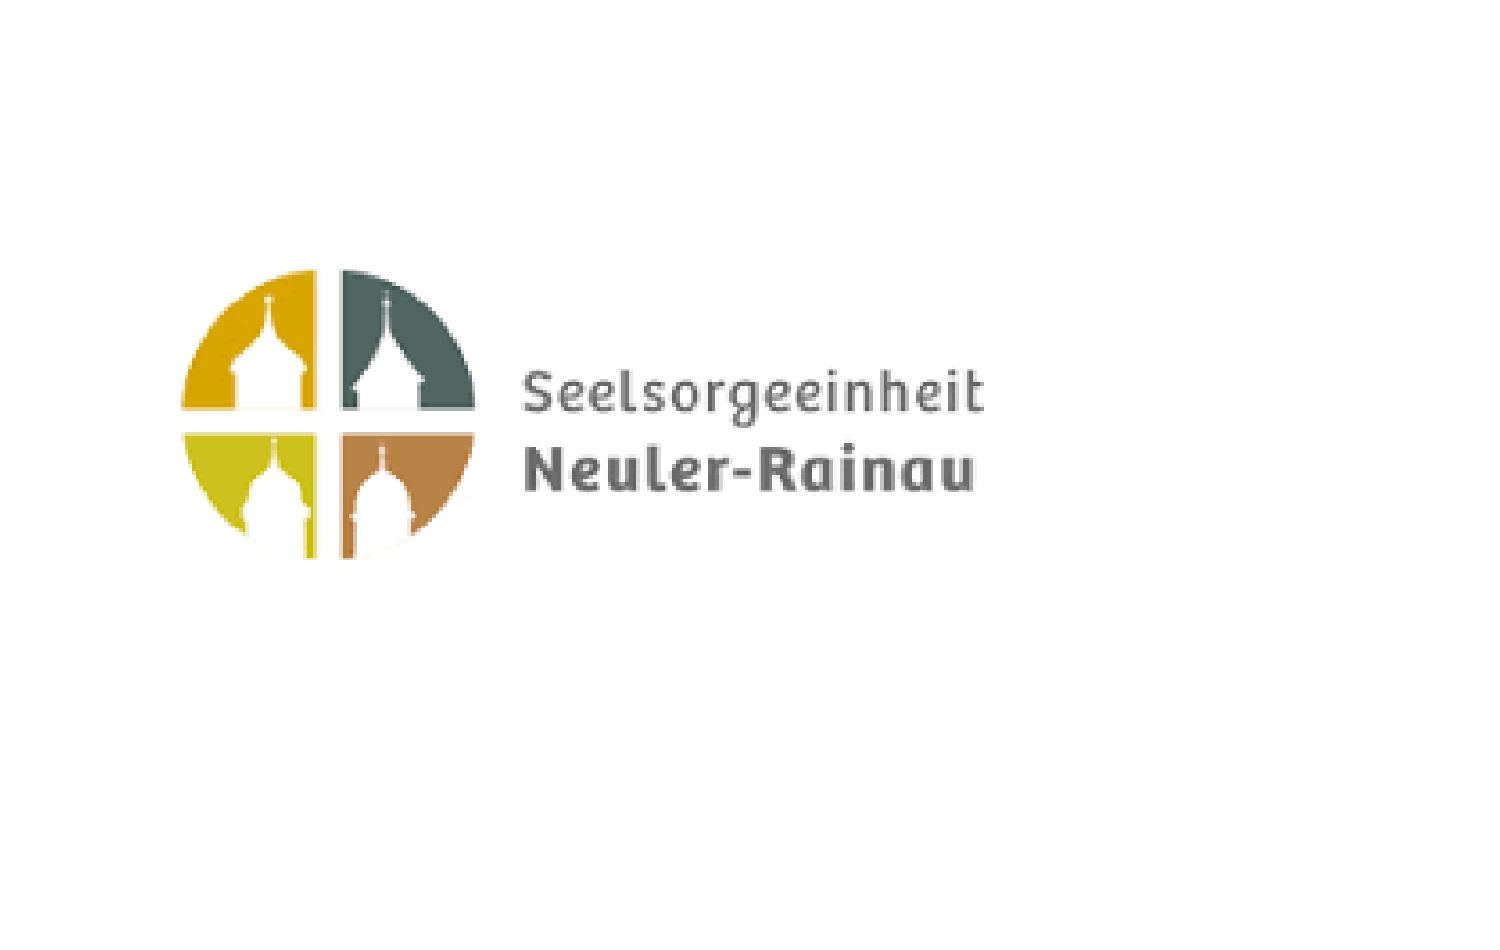 Seelsorgeeinheit 12 - Neuler-Rainau